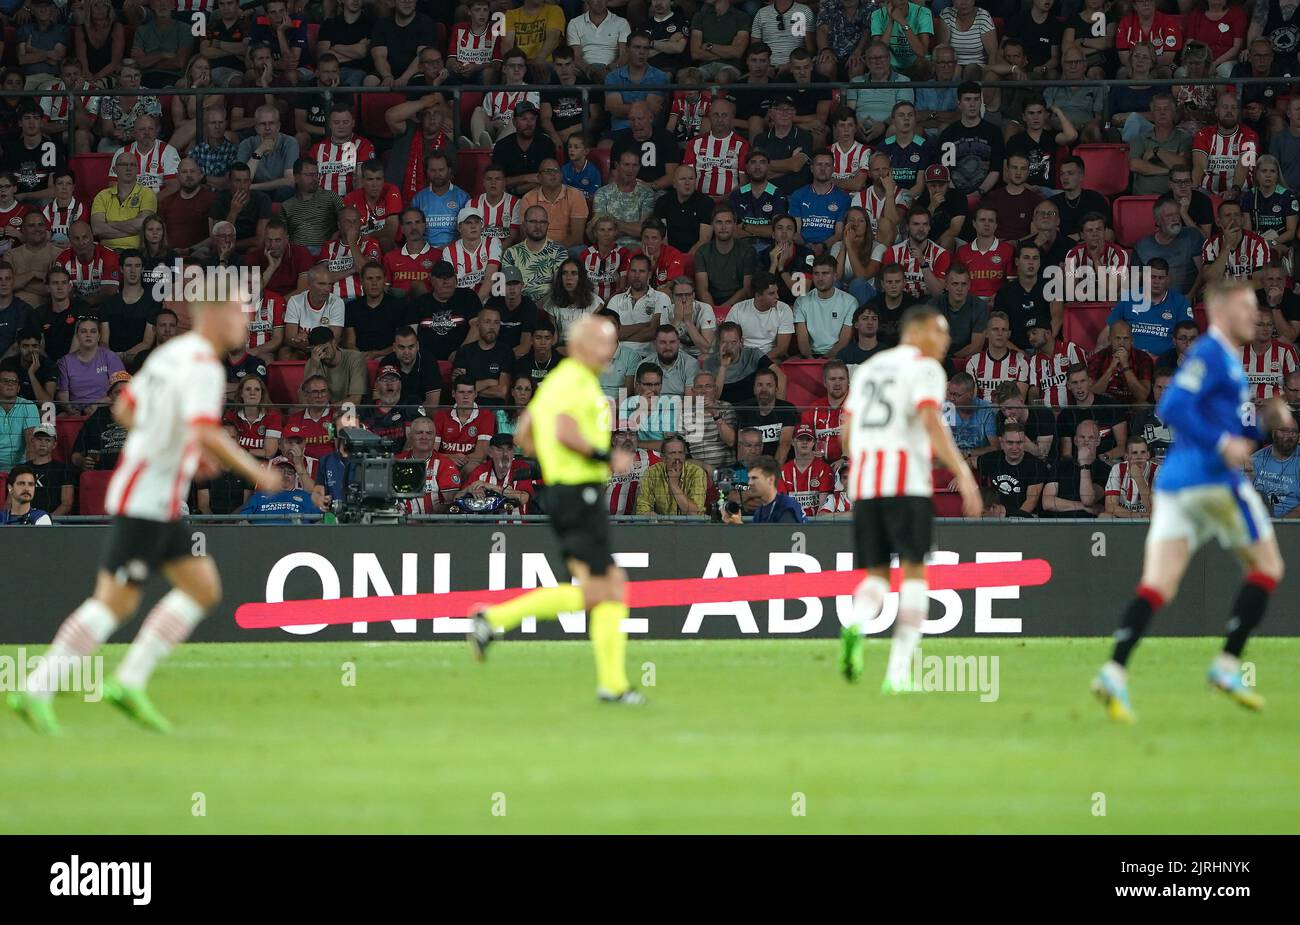 La UEFA abusa de la publicidad online durante el partido de clasificación de la UEFA Champions League en el PSV Stadion, Eindhoven. Fecha de la foto: Miércoles 24 de agosto de 2022. Foto de stock